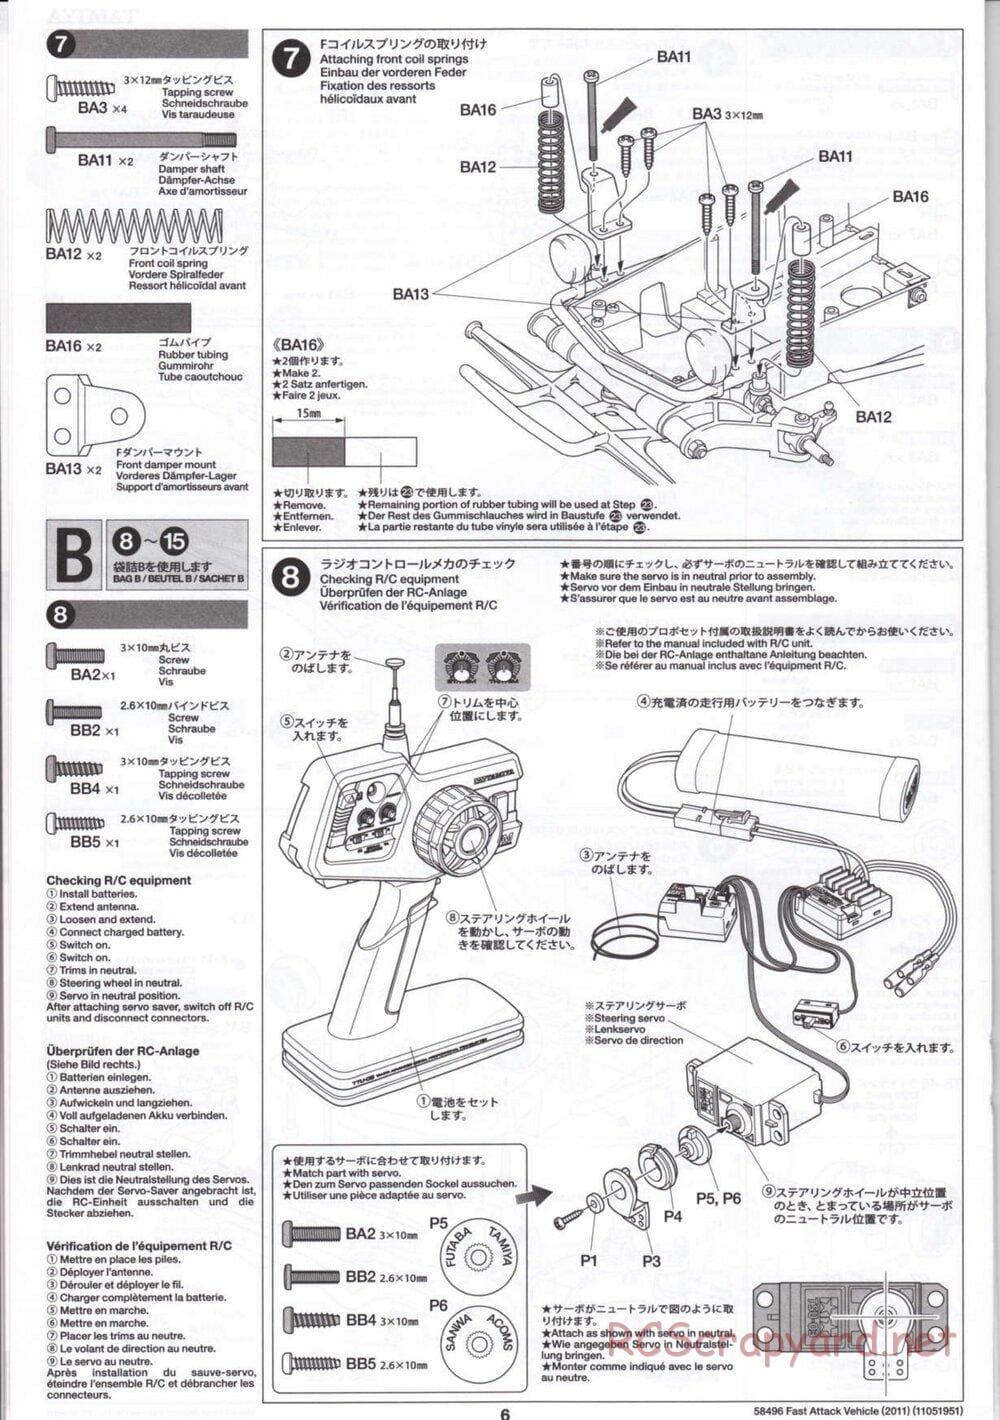 Tamiya - Fast Attack Vehicle 2011 - FAV Chassis - Manual - Page 6